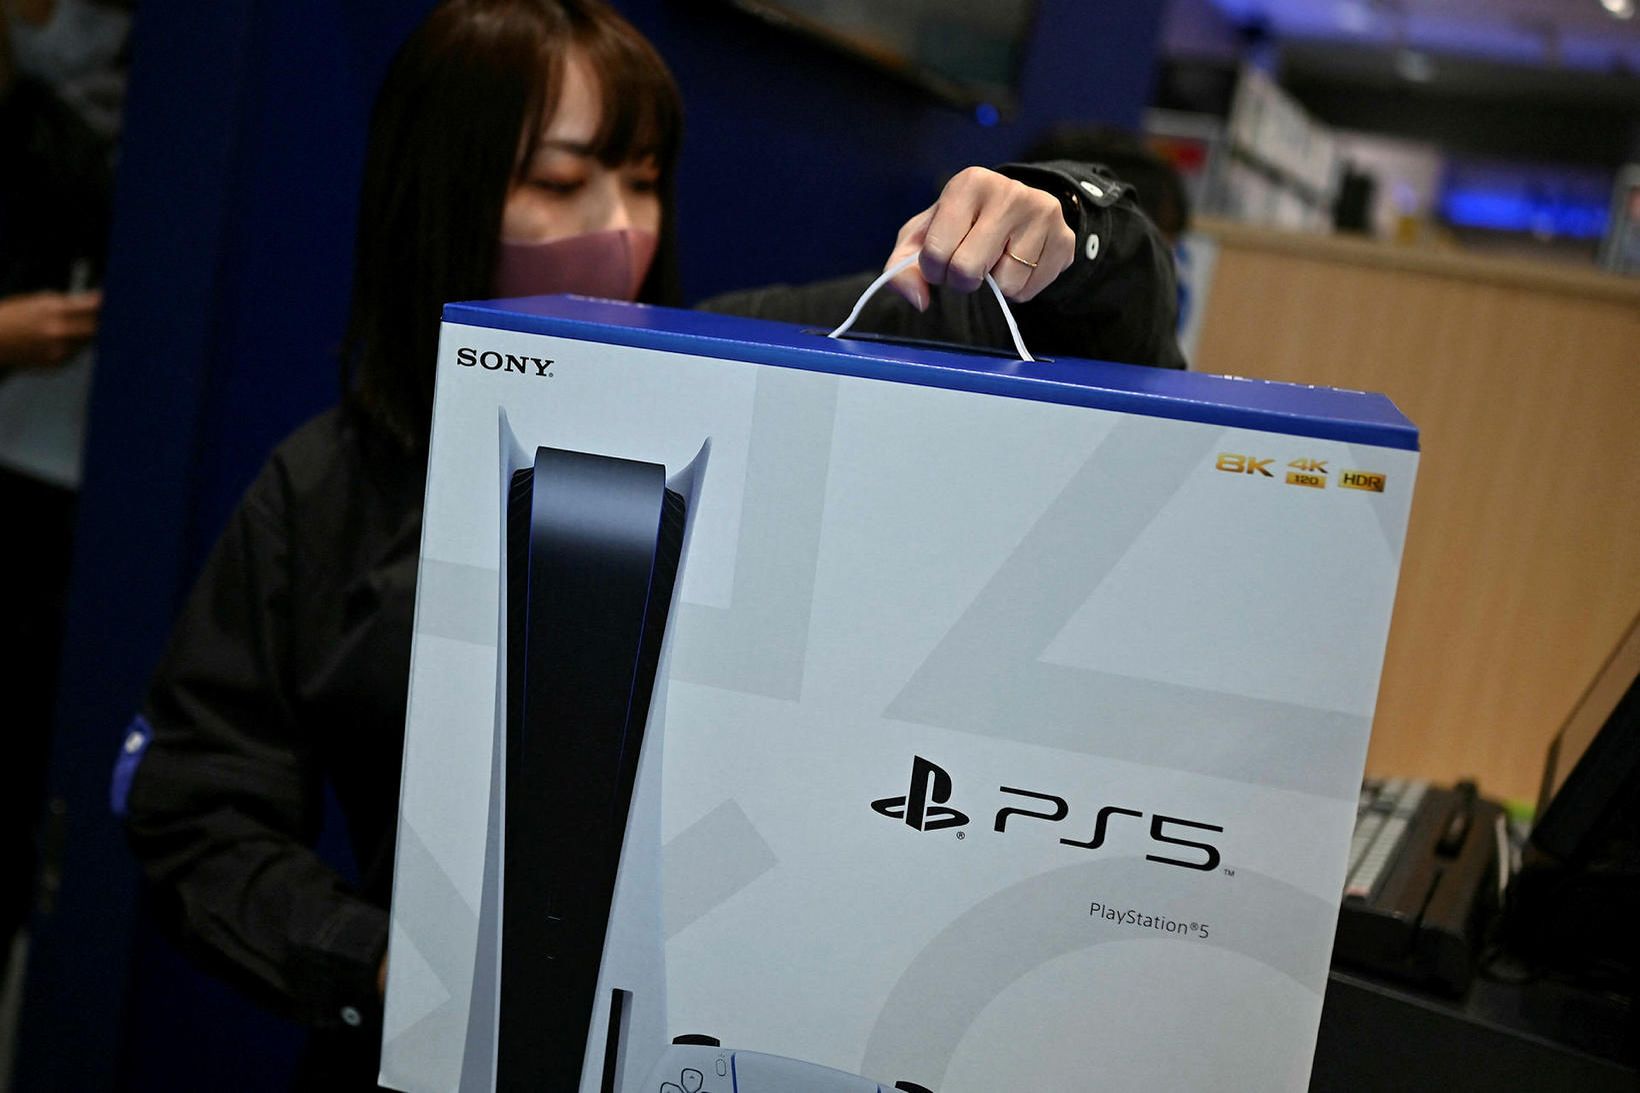 Playstation 5-leikjatölvan er uppseld á Íslandi og víðar í heiminum.